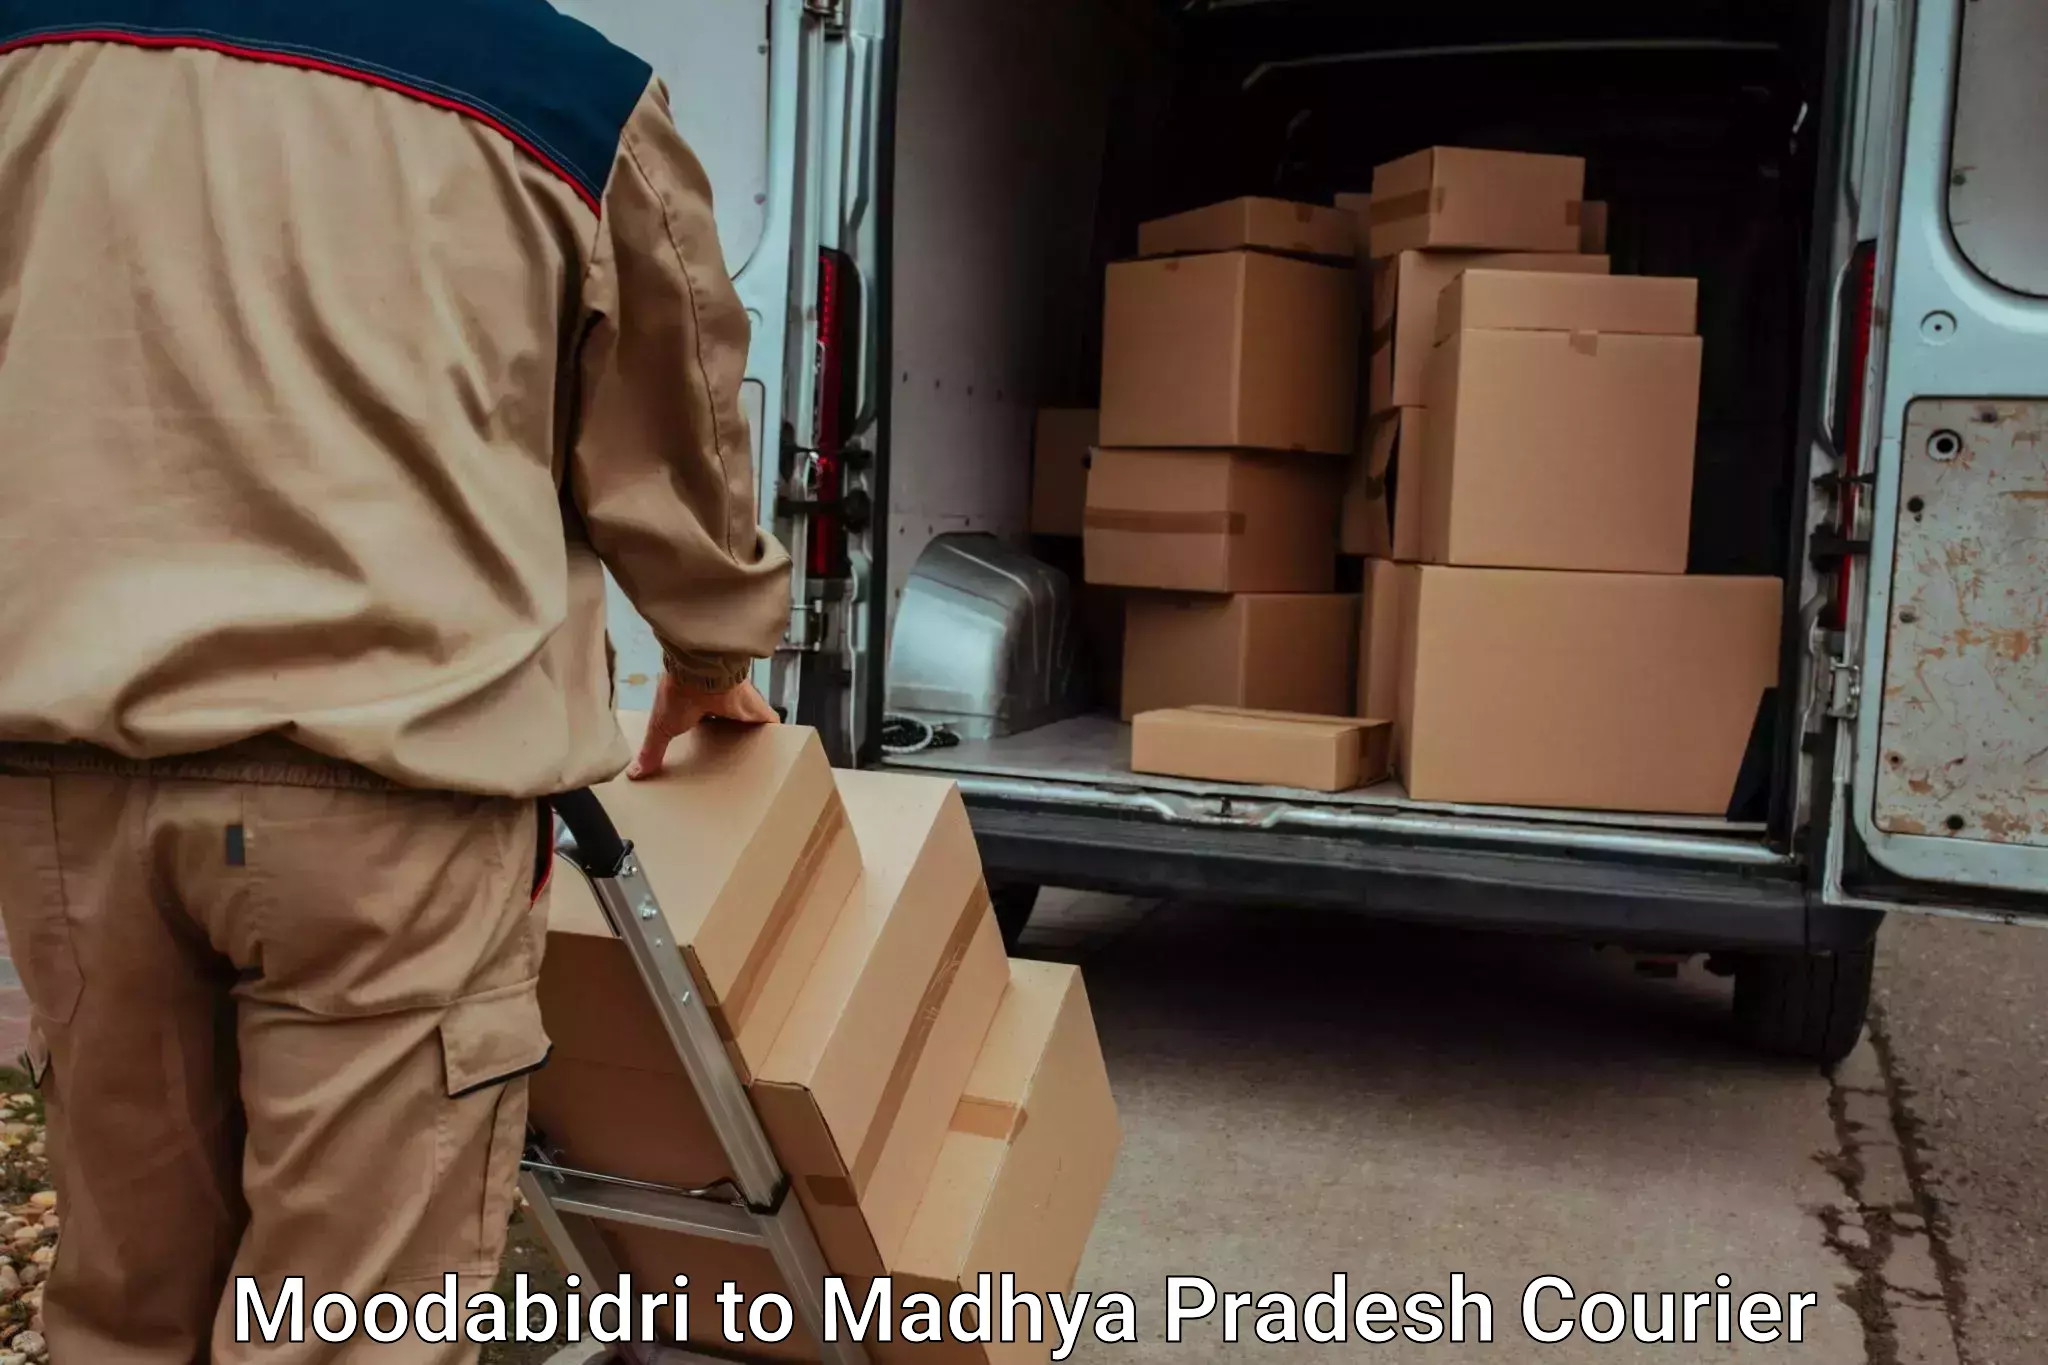 Furniture transport specialists Moodabidri to Ashta